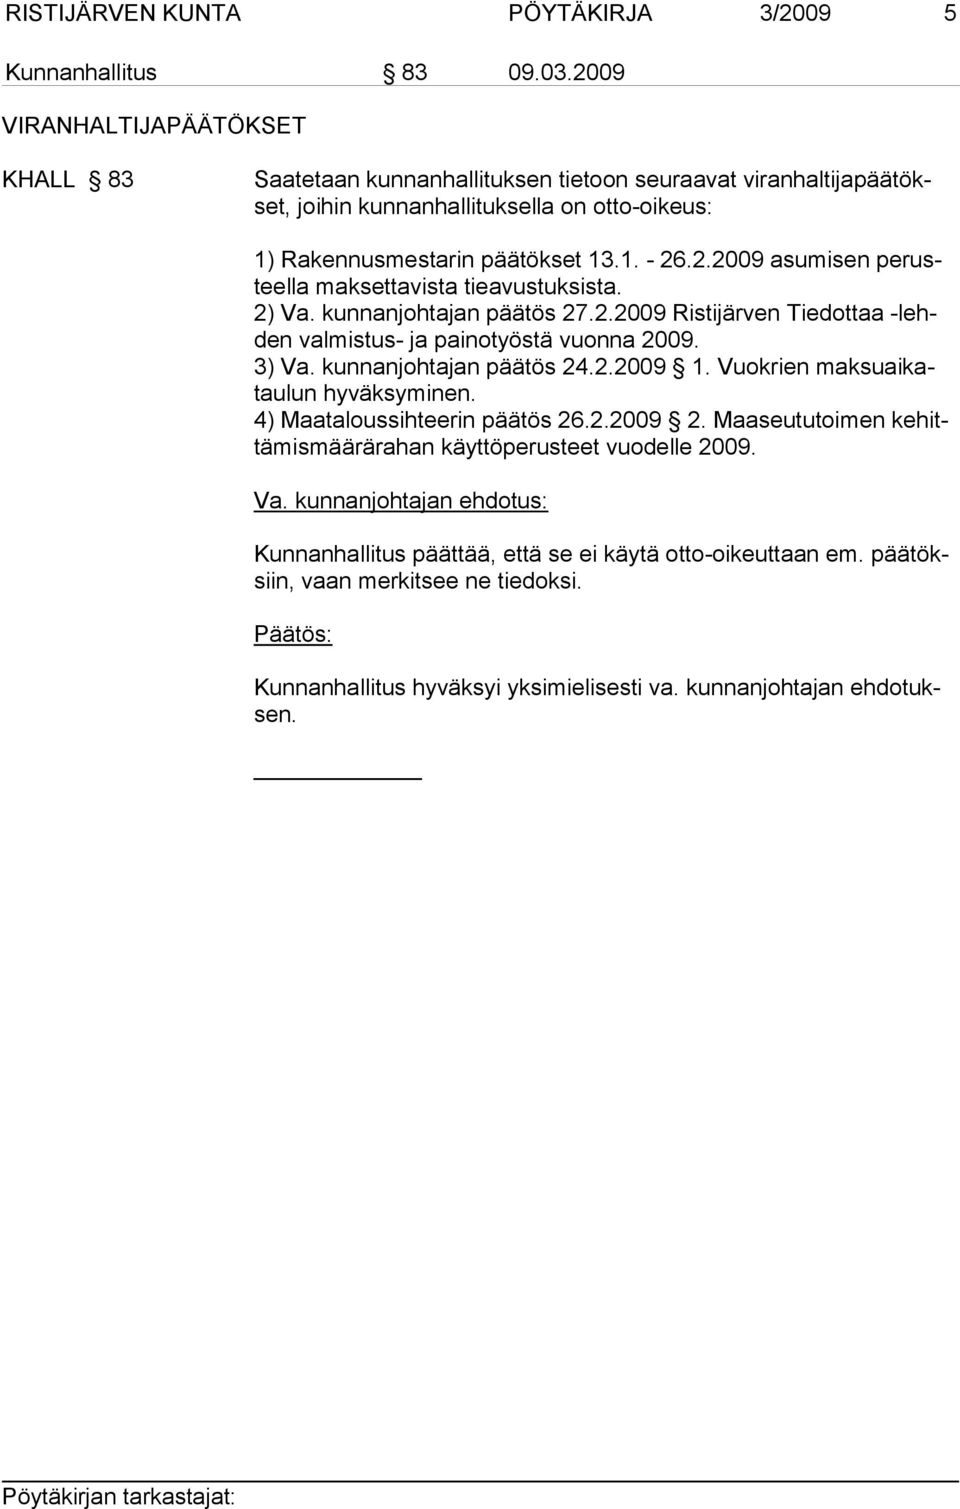 2) Va. kunnanjohtajan päätös 27.2.2009 Ristijärven Tiedottaa -lehden val mis tus- ja painotyöstä vuonna 2009. 3) Va. kunnanjohtajan päätös 24.2.2009 1. Vuokrien maksuaikatau lun hyväksyminen.